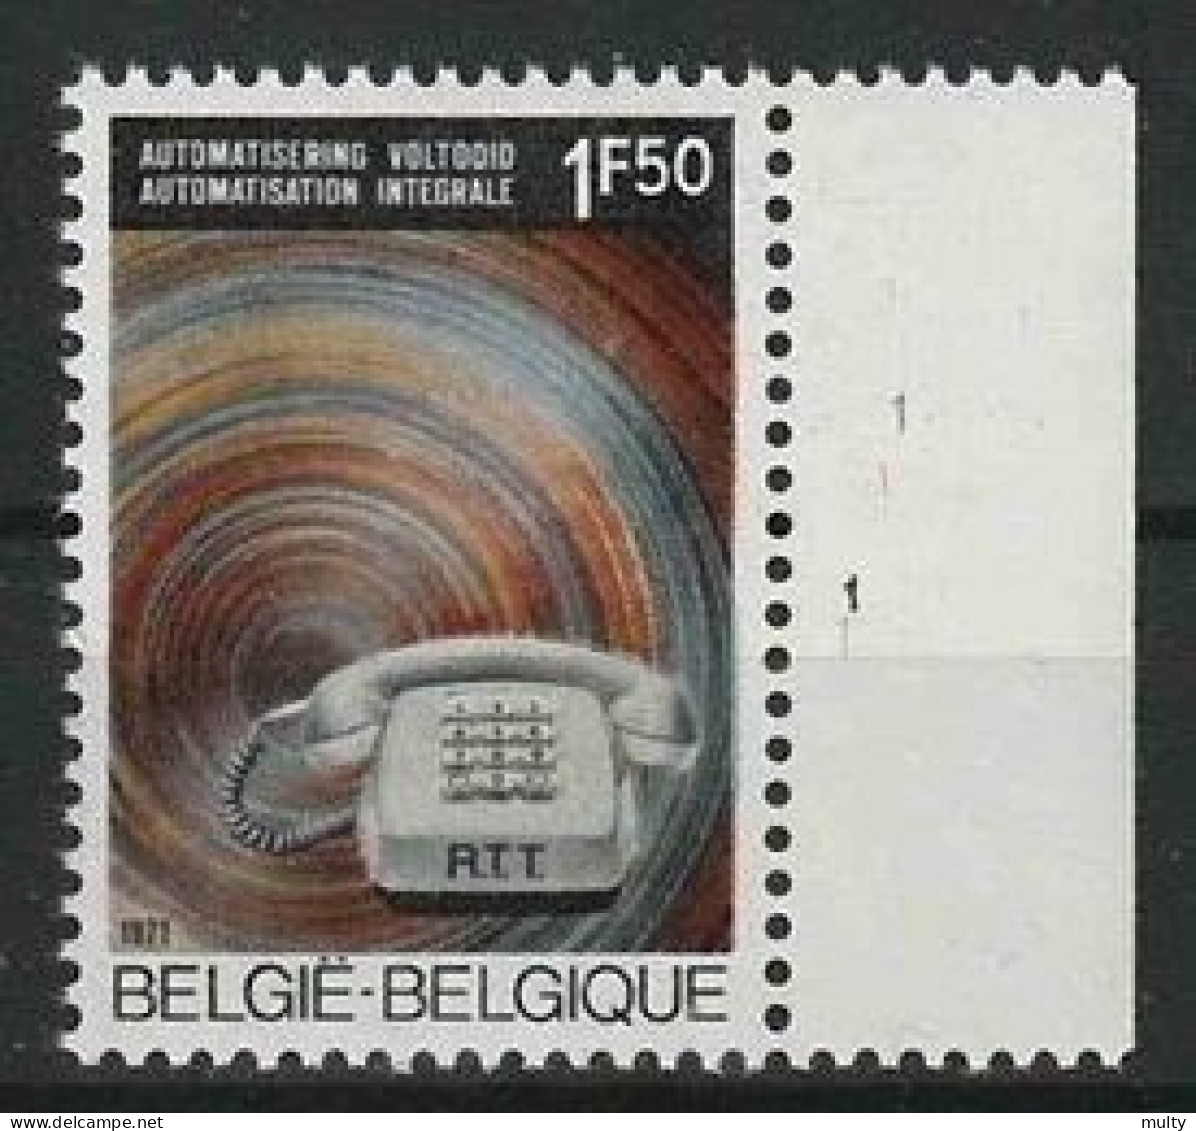 Belgie OCB 1567 ** MNH Met Plaatnummer 1 - 1971-1980